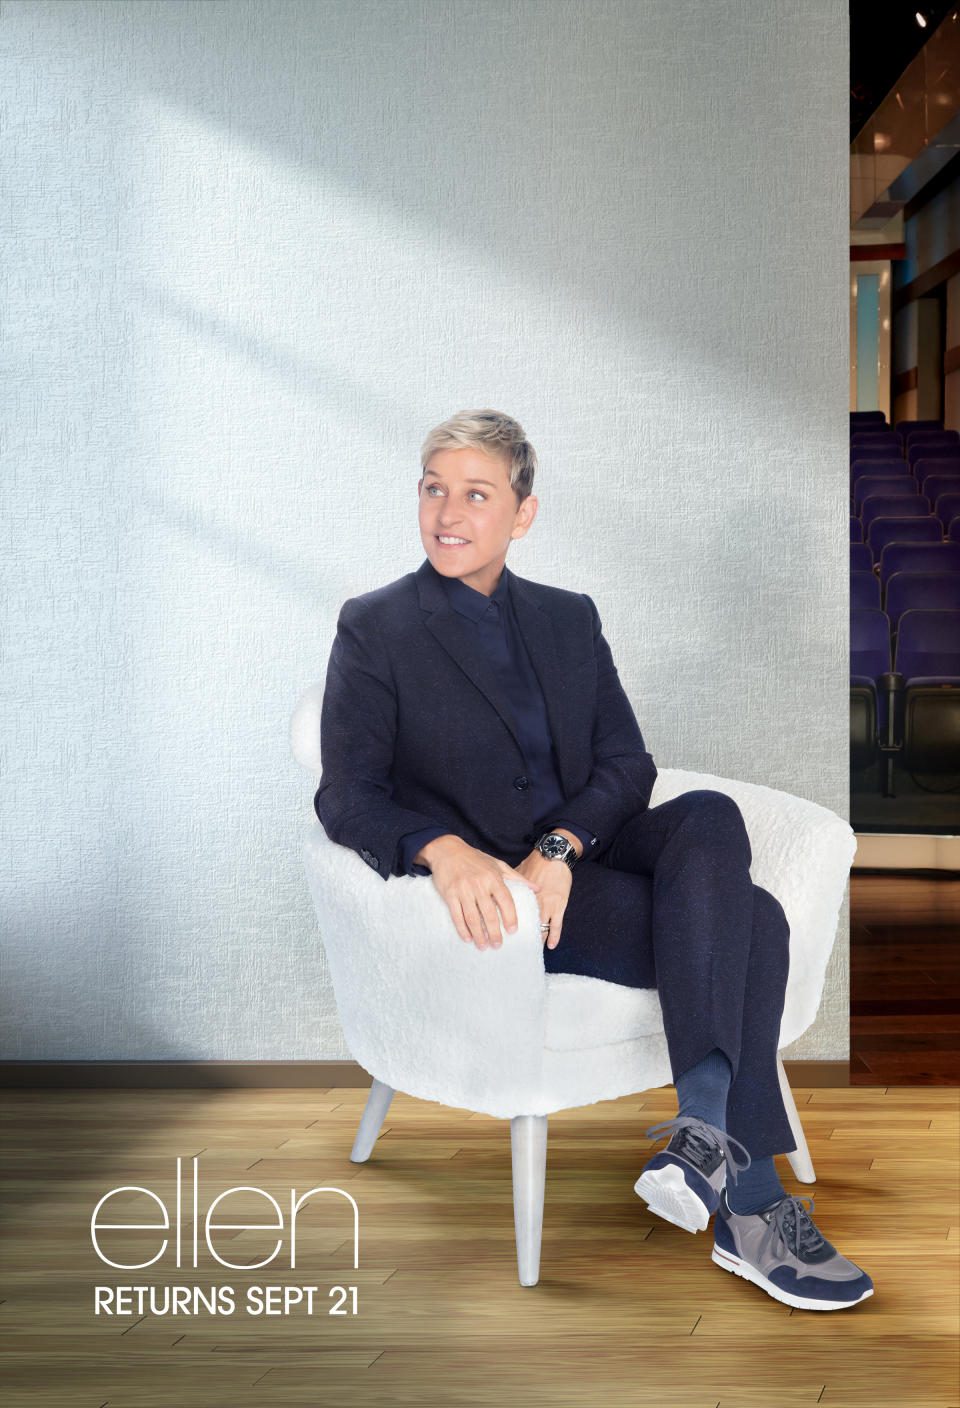 The Ellen DeGeneres Show key art for season 18. (Courtesy: The Ellen DeGeneres Show)